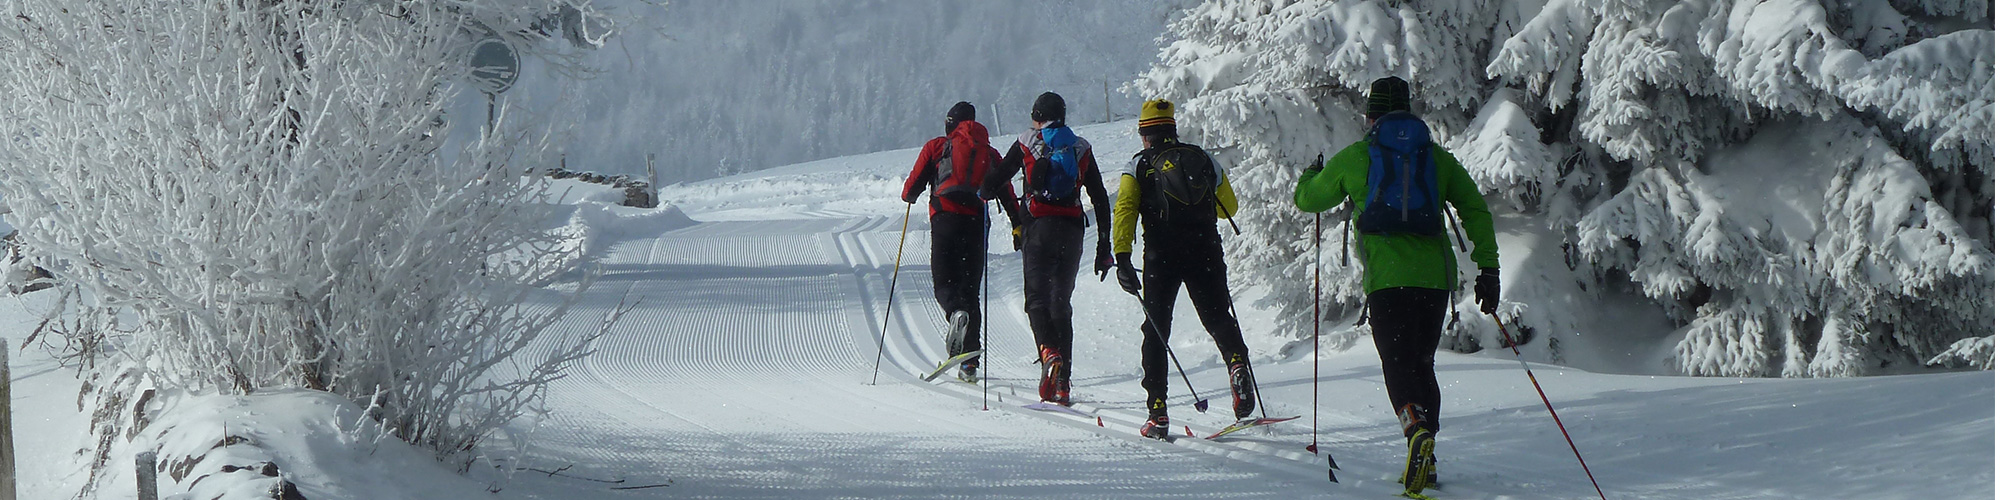 image de pistes de ski de fond